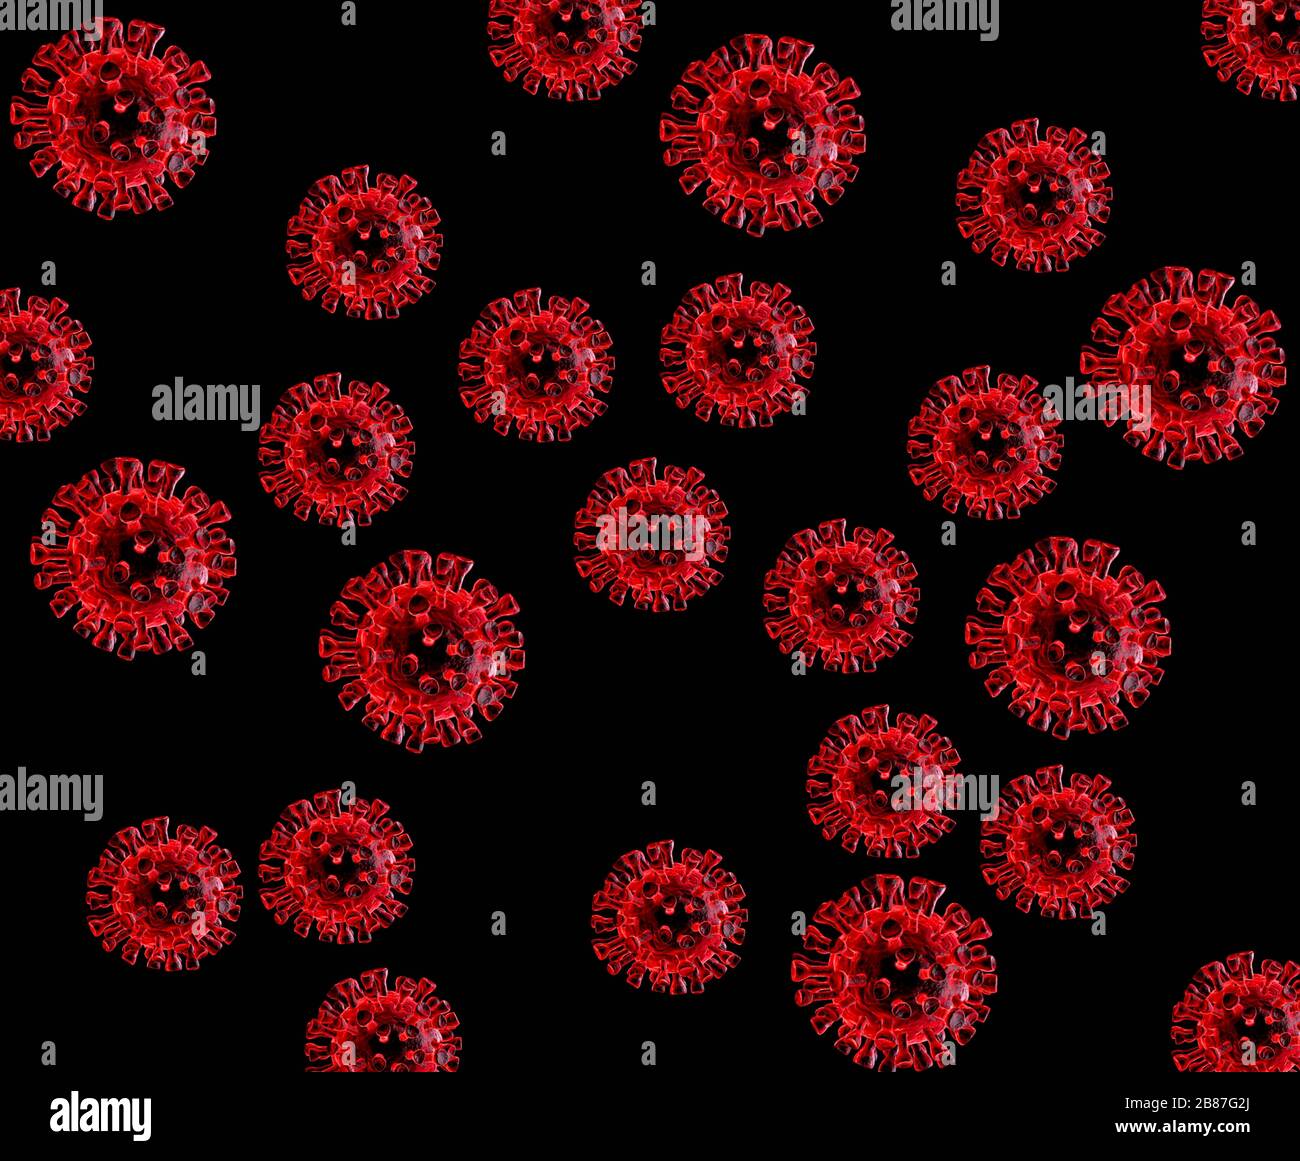 Particules de coronavirus générées numériques montrant des pics qui forment une couronne comme le corona solaire Banque D'Images